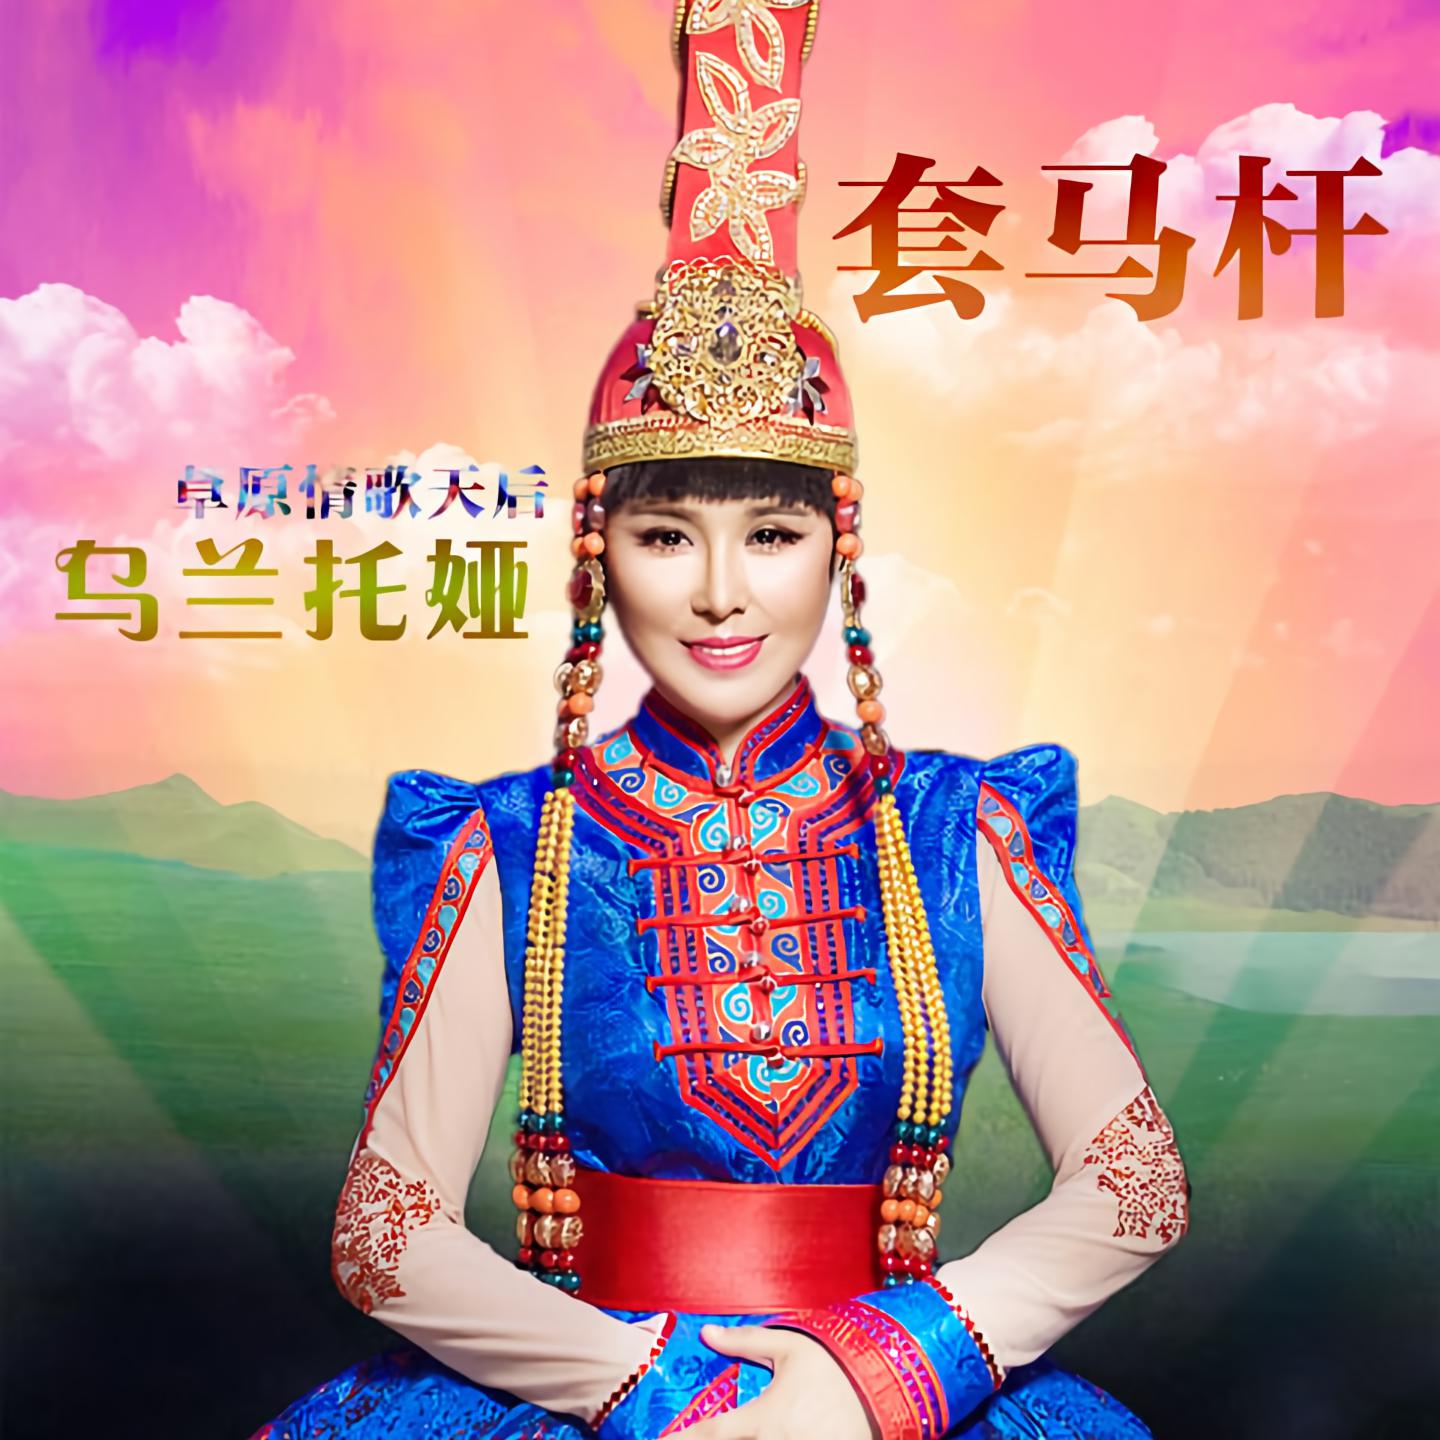 乌兰托娅新歌《幸福有你》上线-音乐中国_中国网